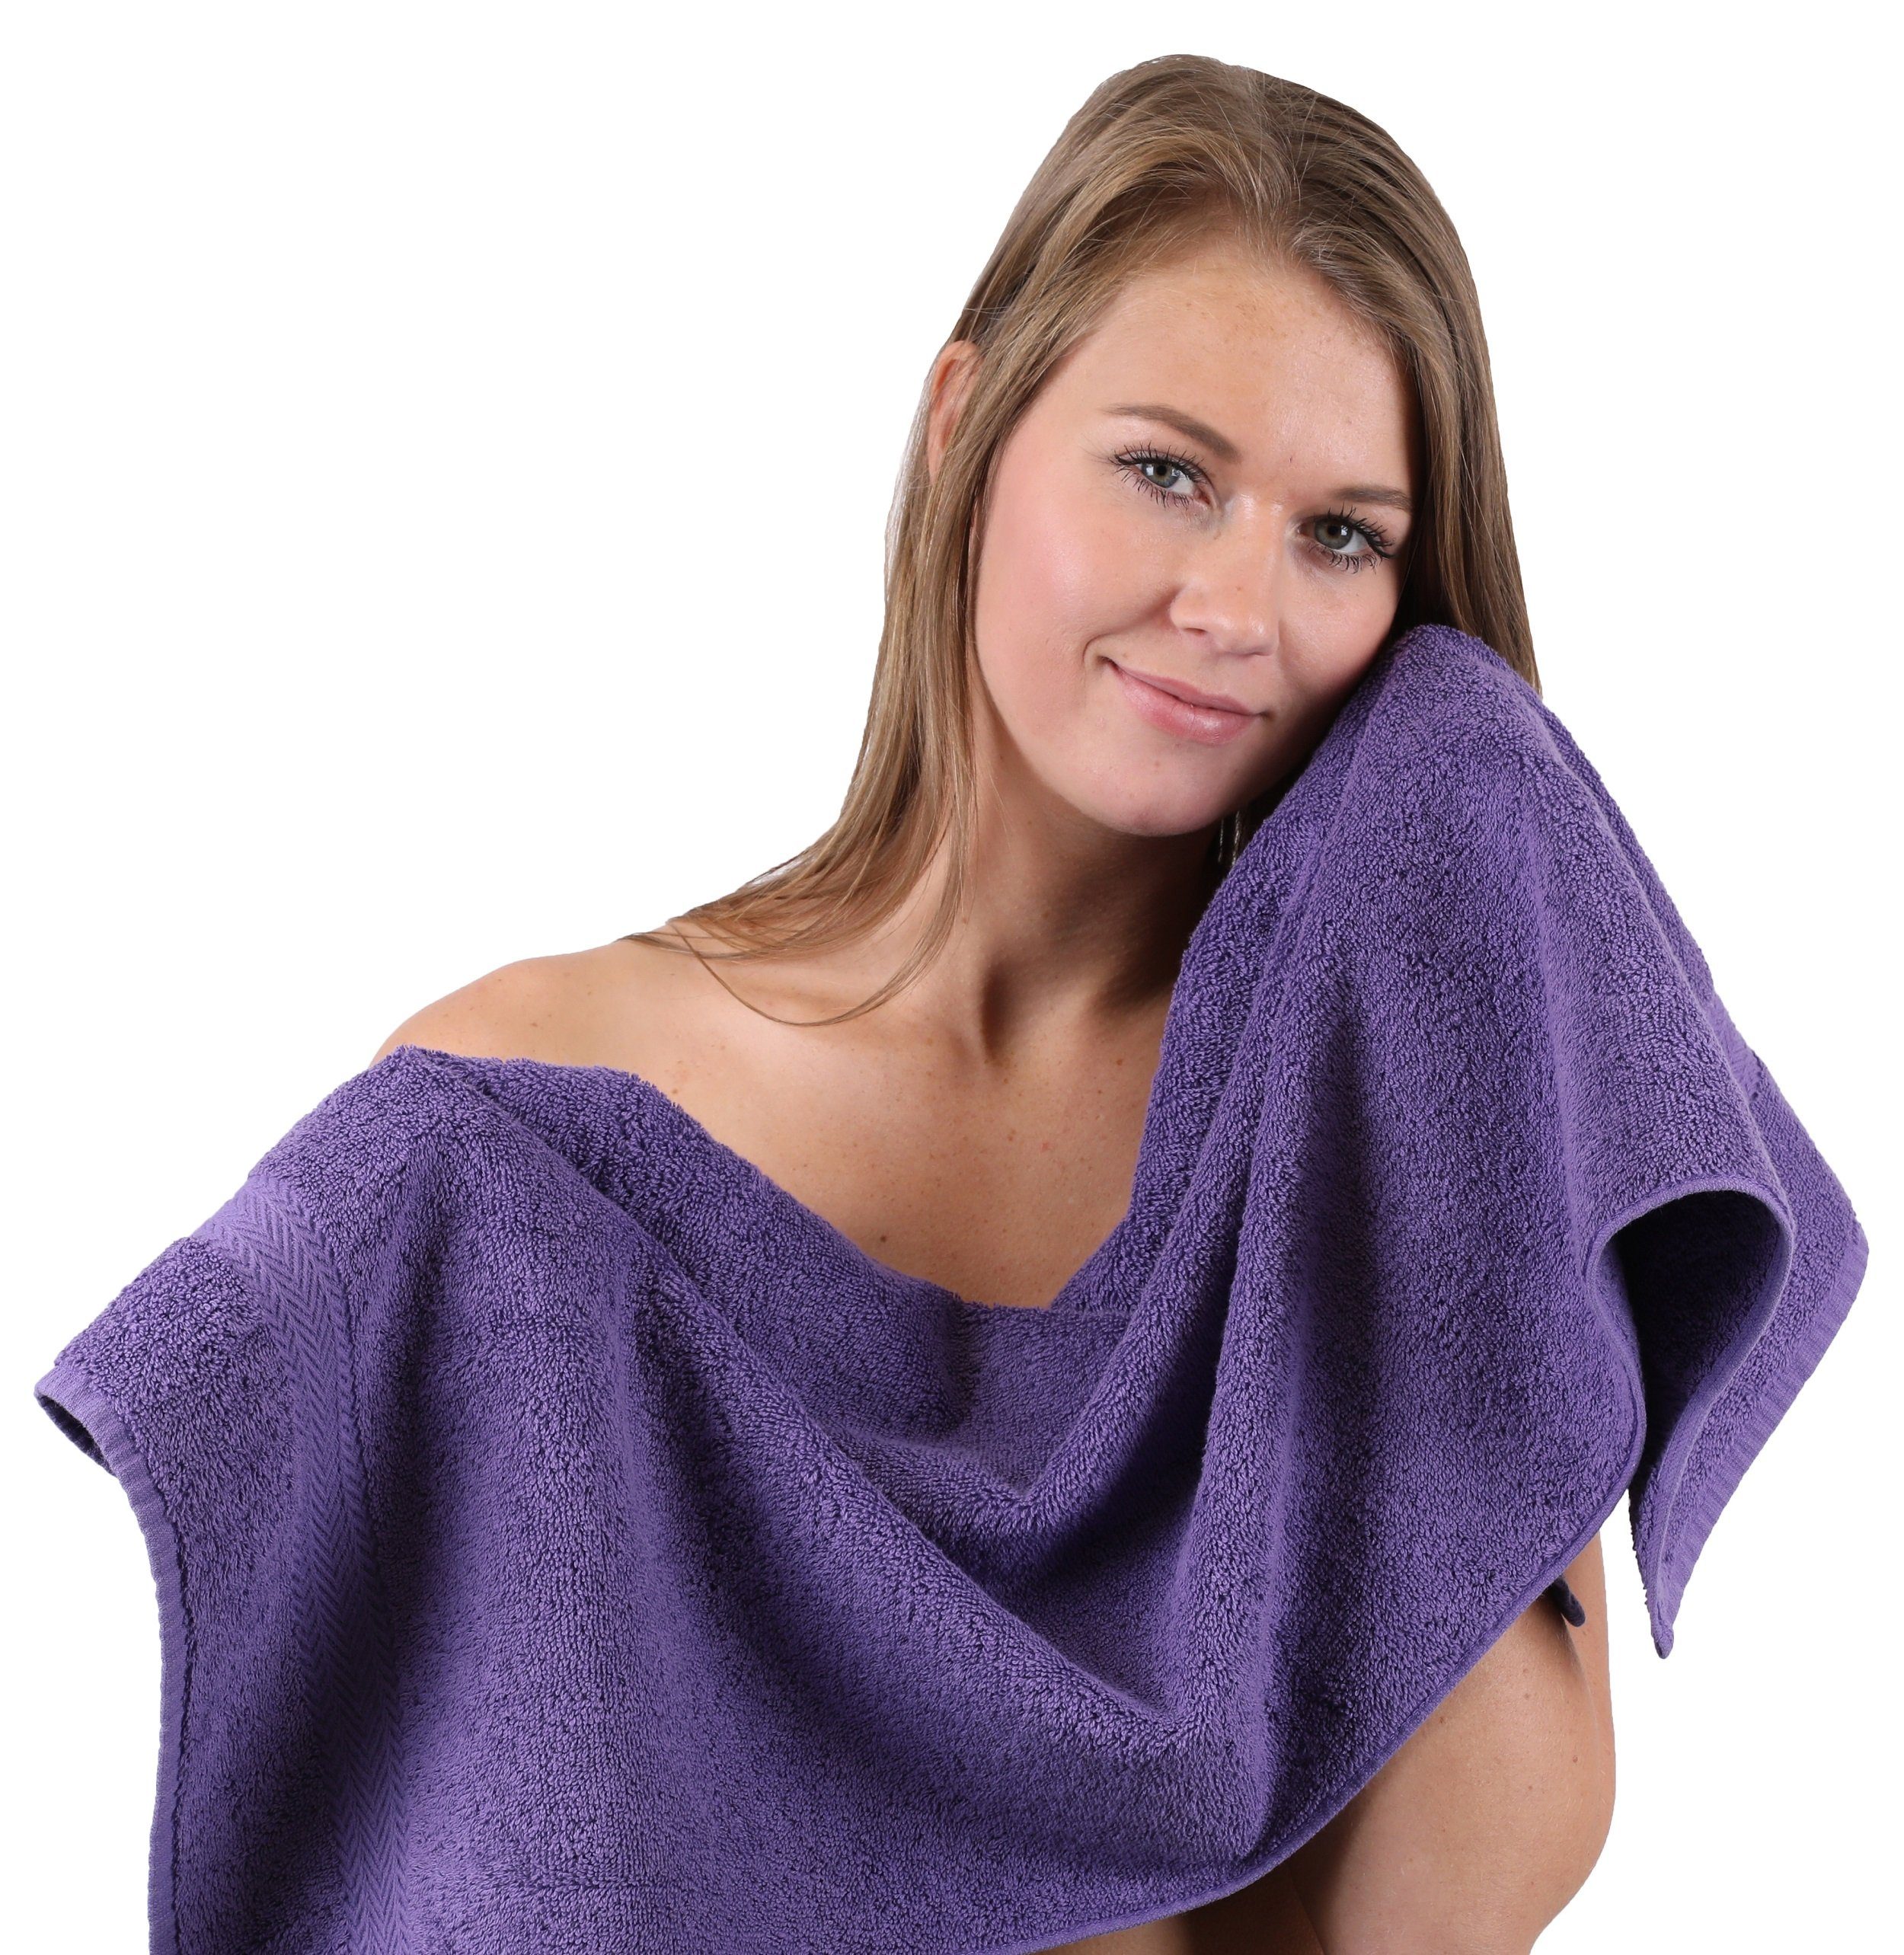 10-TLG. Handtuch Handtuch-Set 100% Classic Betz lila, Baumwolle und Set Farbe smaragdgrün